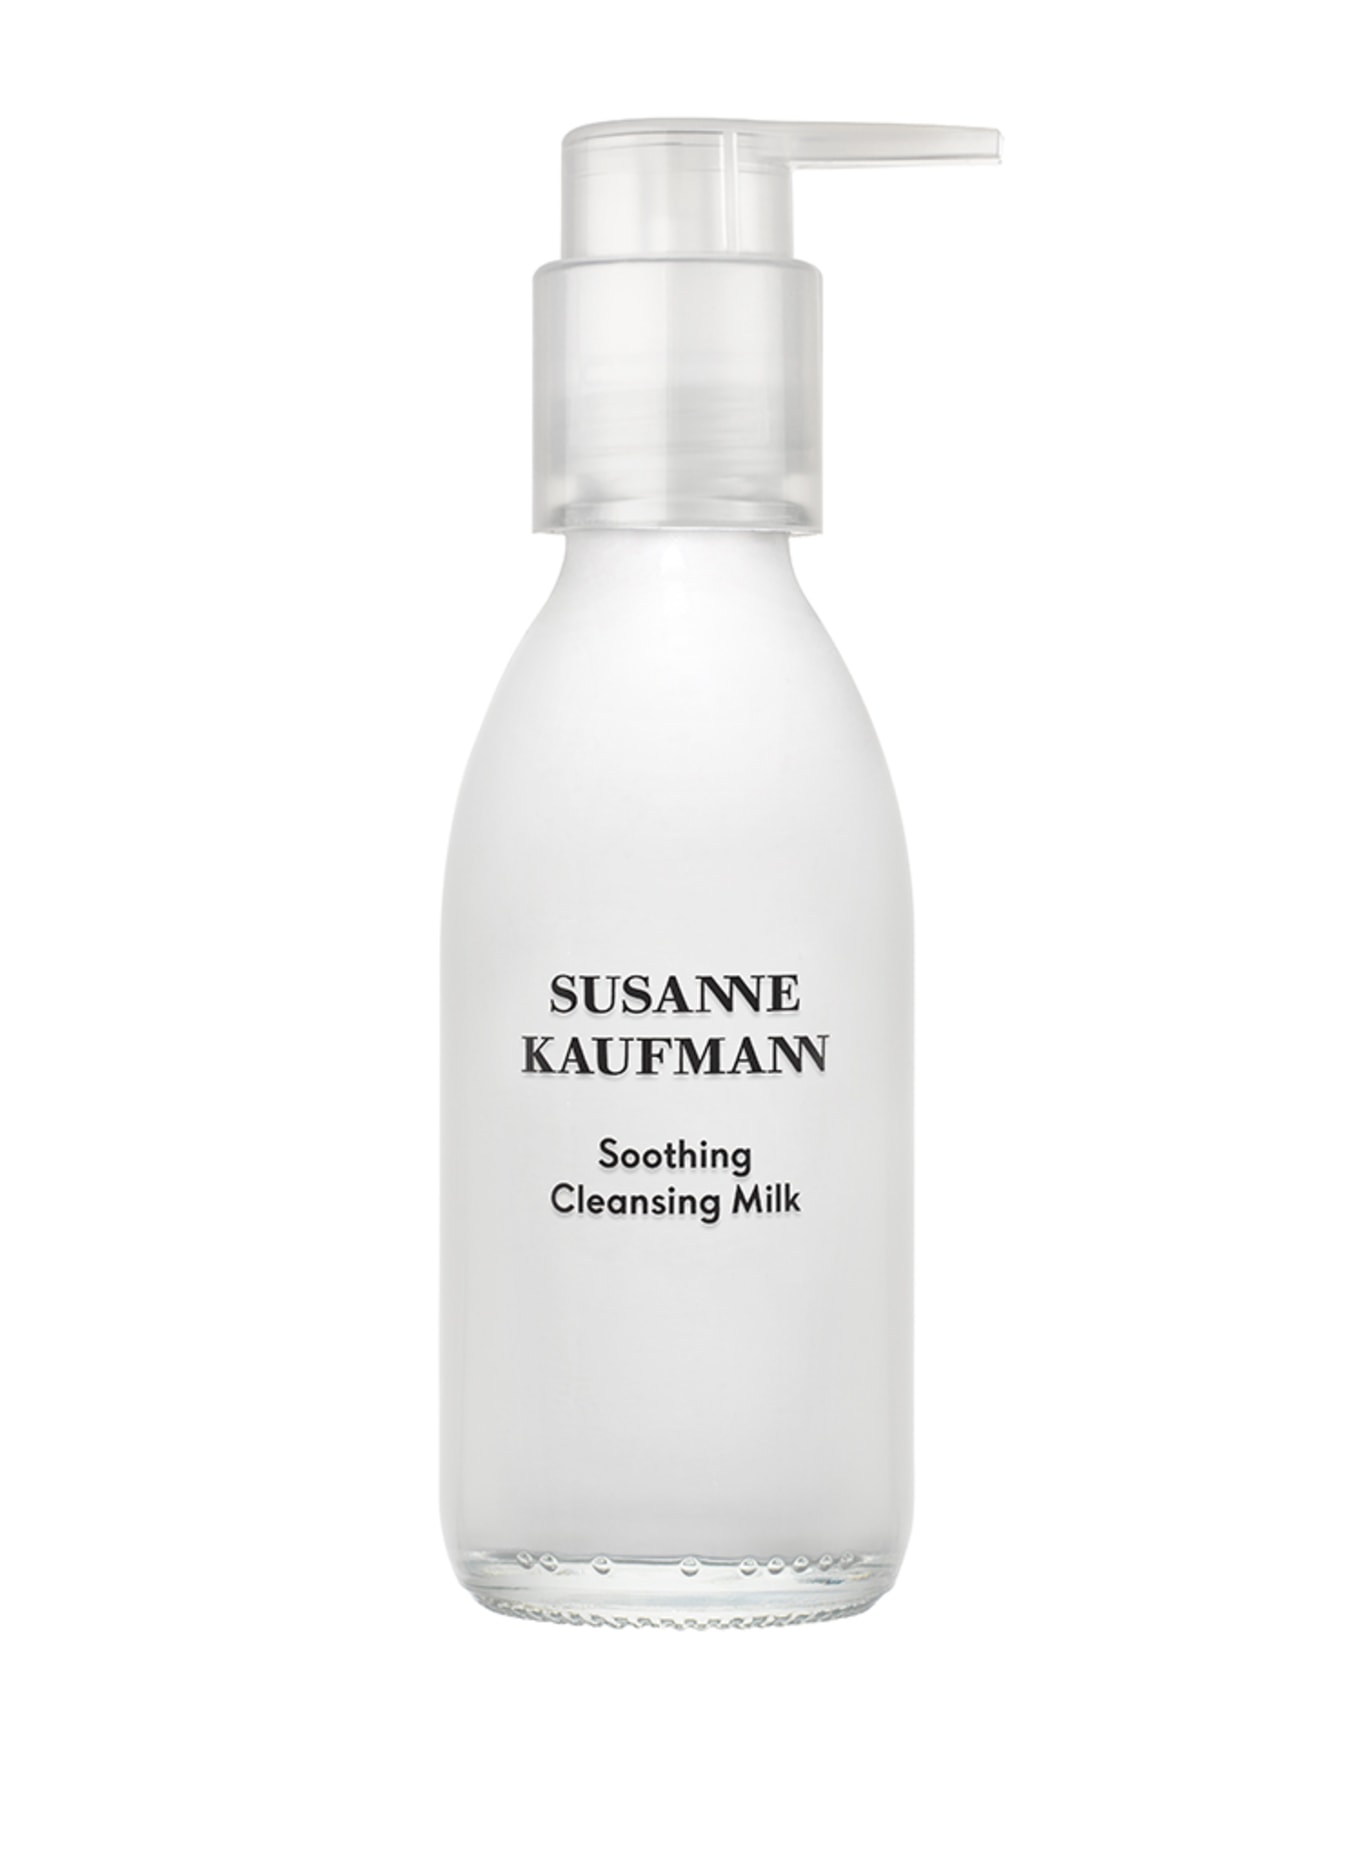 SUSANNE KAUFMANN SOOTHING CLEANSING MILK  (Bild 1)